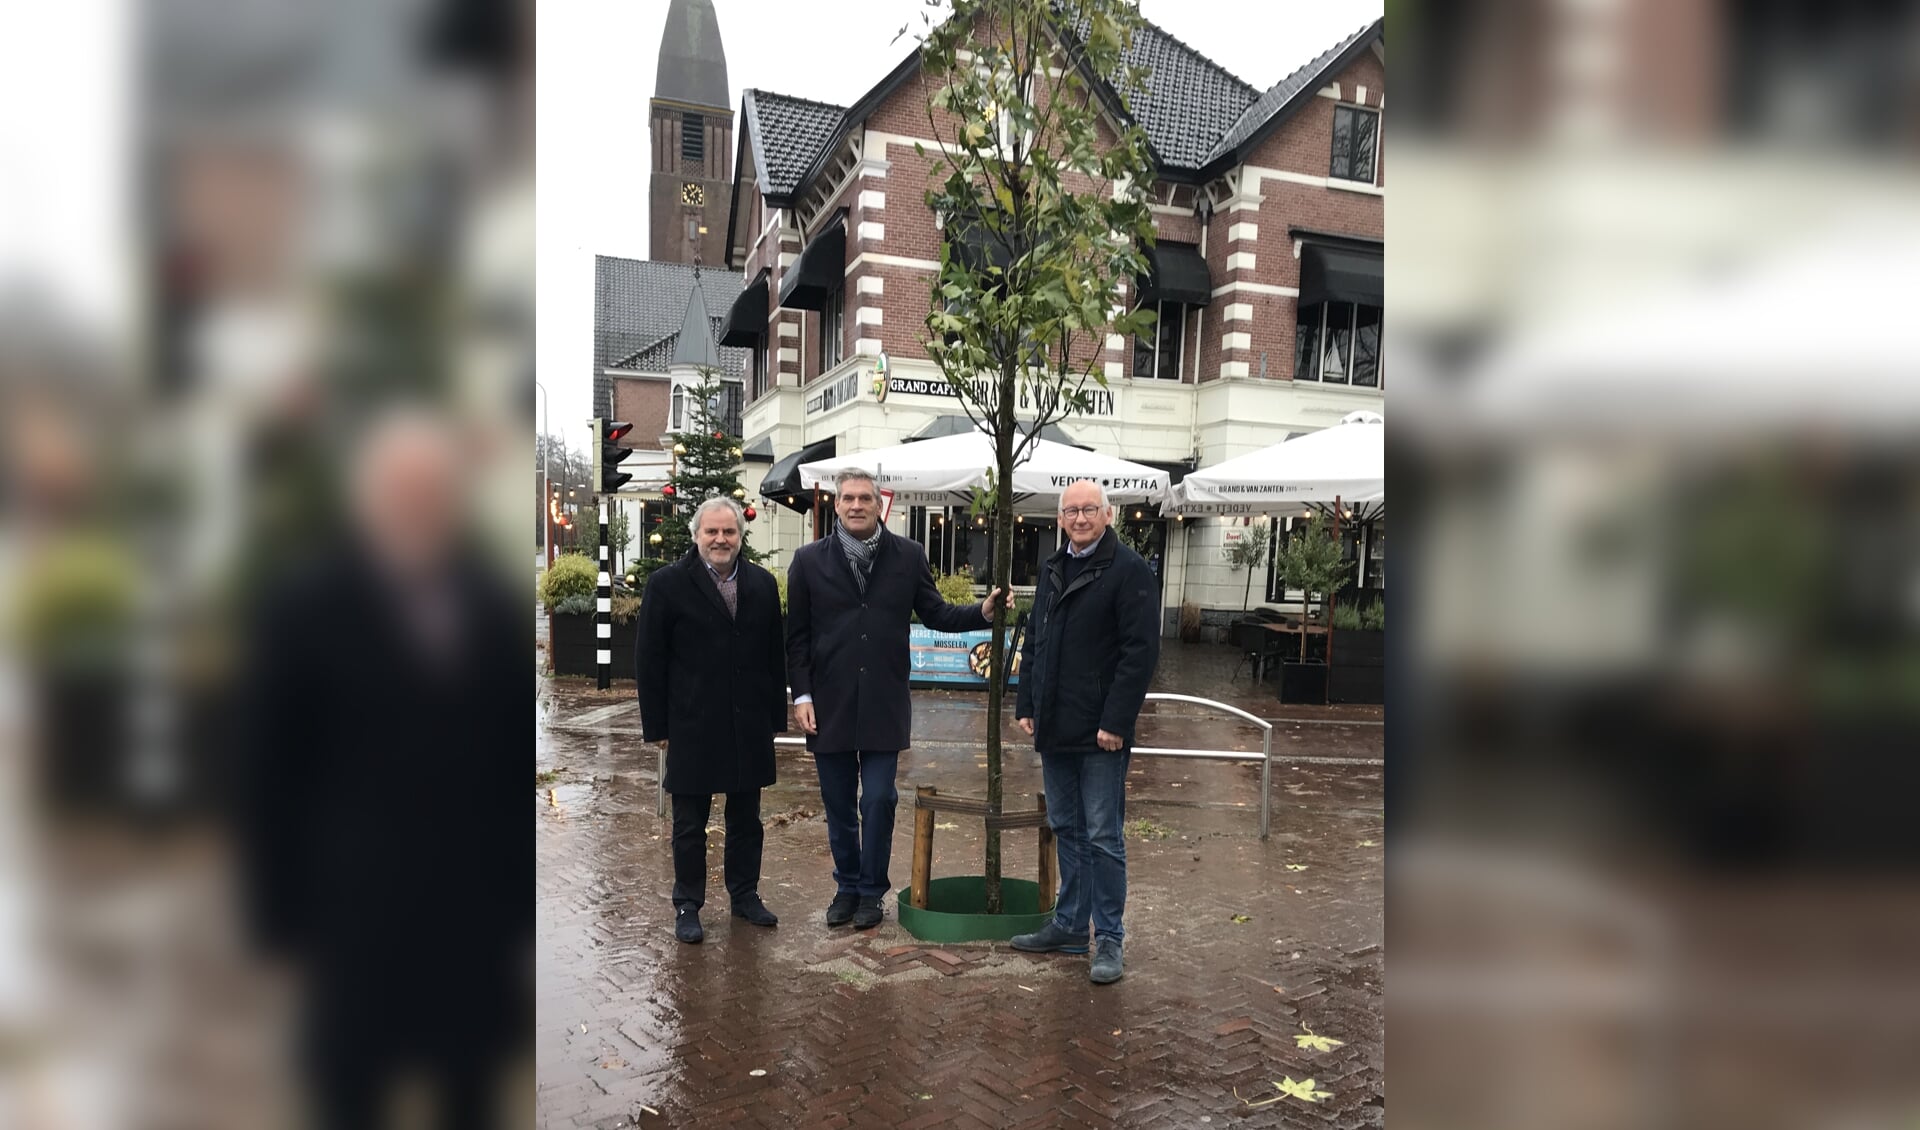 Bram Brinkman, Burgemeester Naafs en Loek Bosman poseren naast de boom